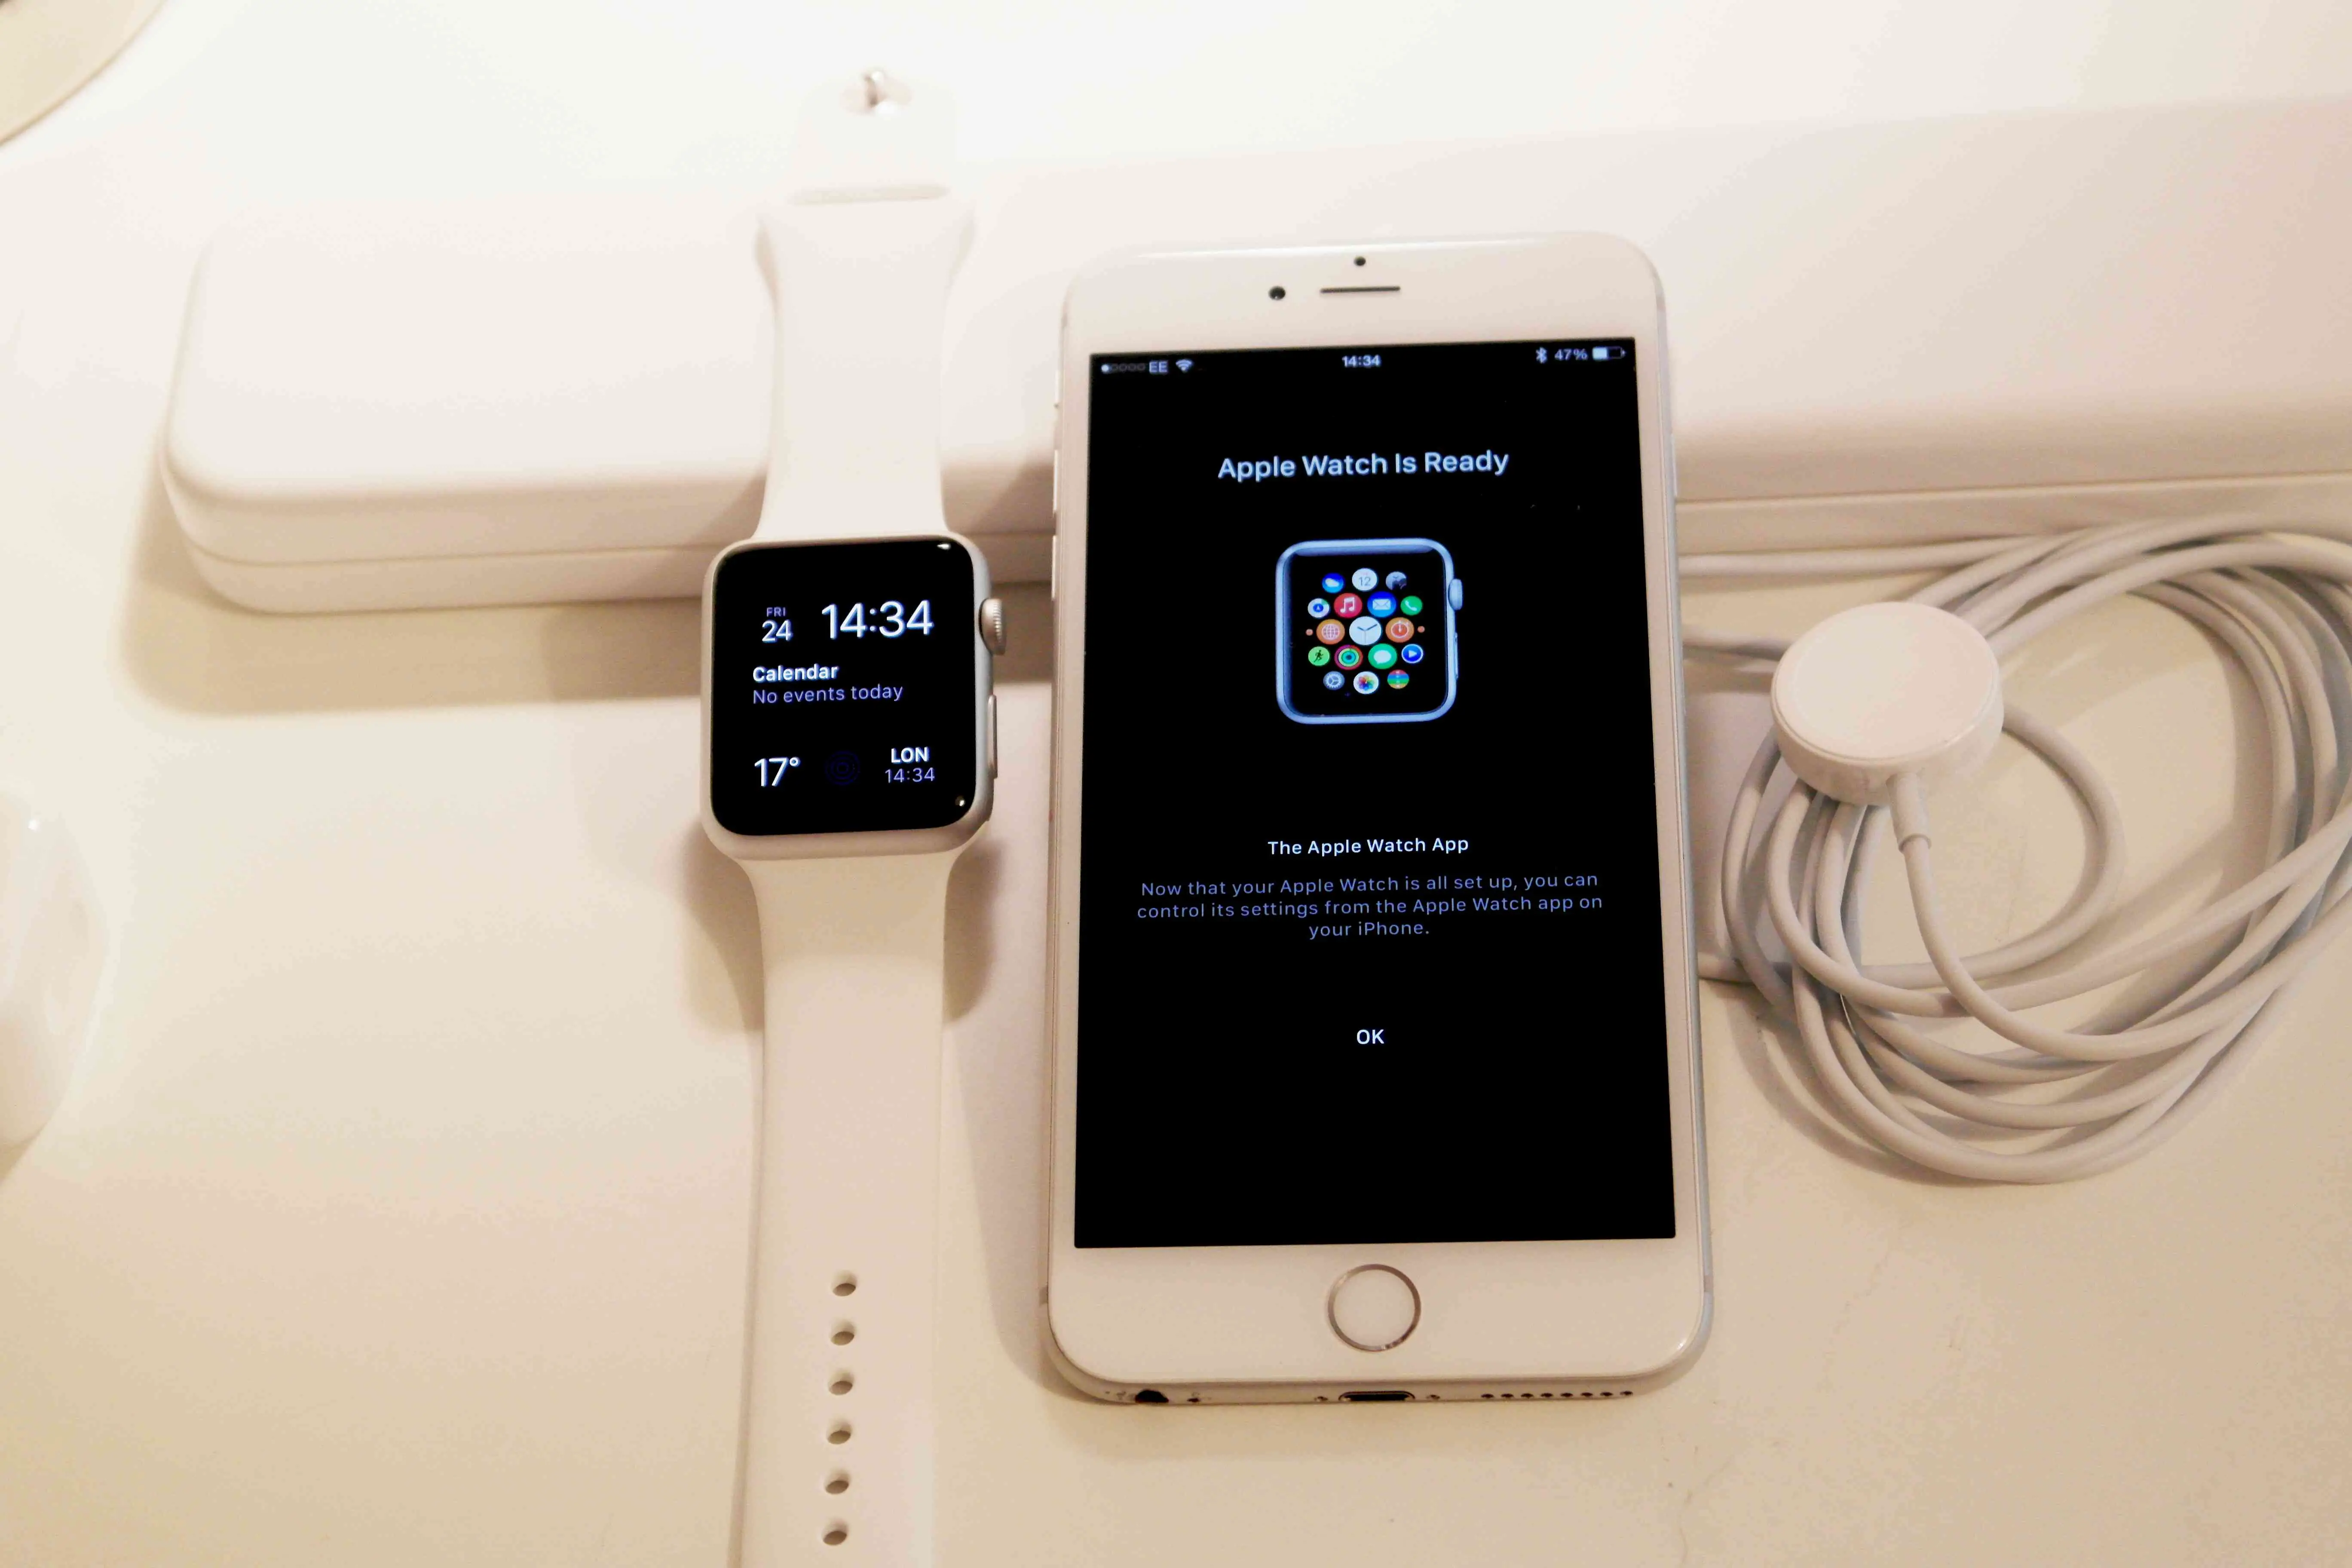 Mensagem do Apple Watch está pronto no iPhone ao lado do Apple Watch